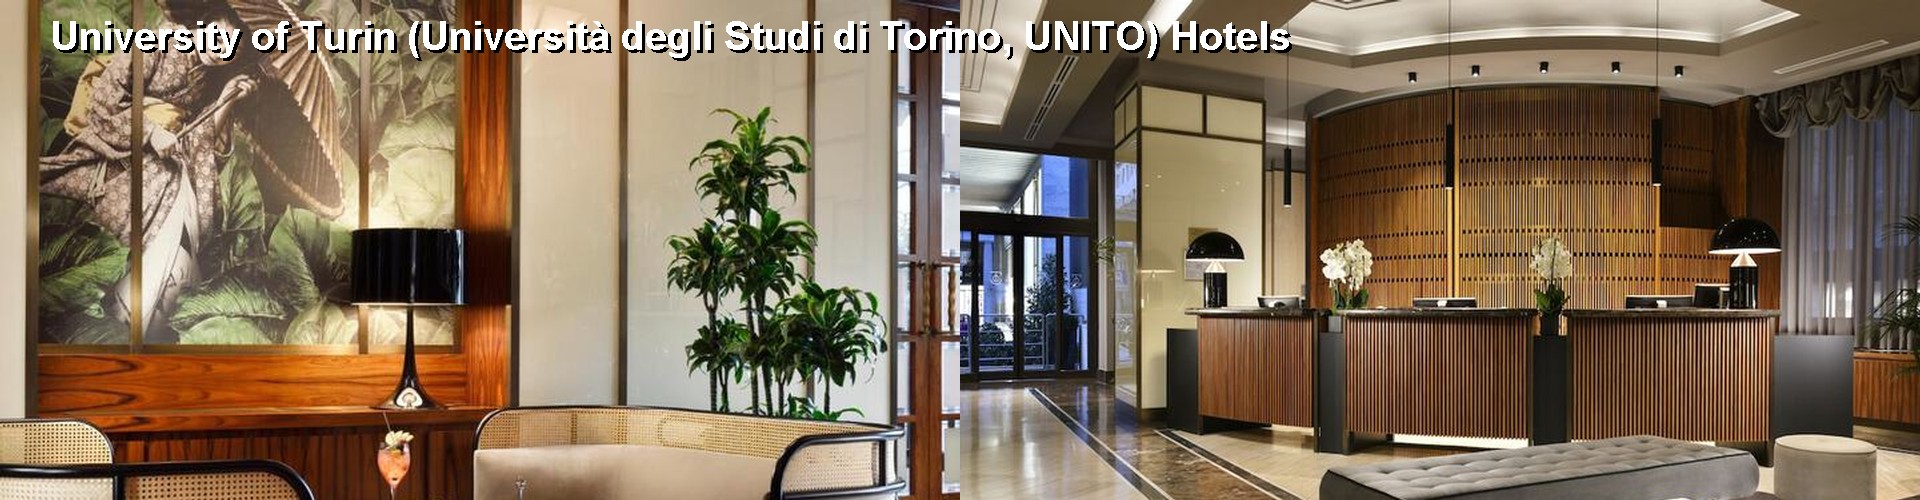 5 Best Hotels near University of Turin (Università degli Studi di Torino, UNITO)